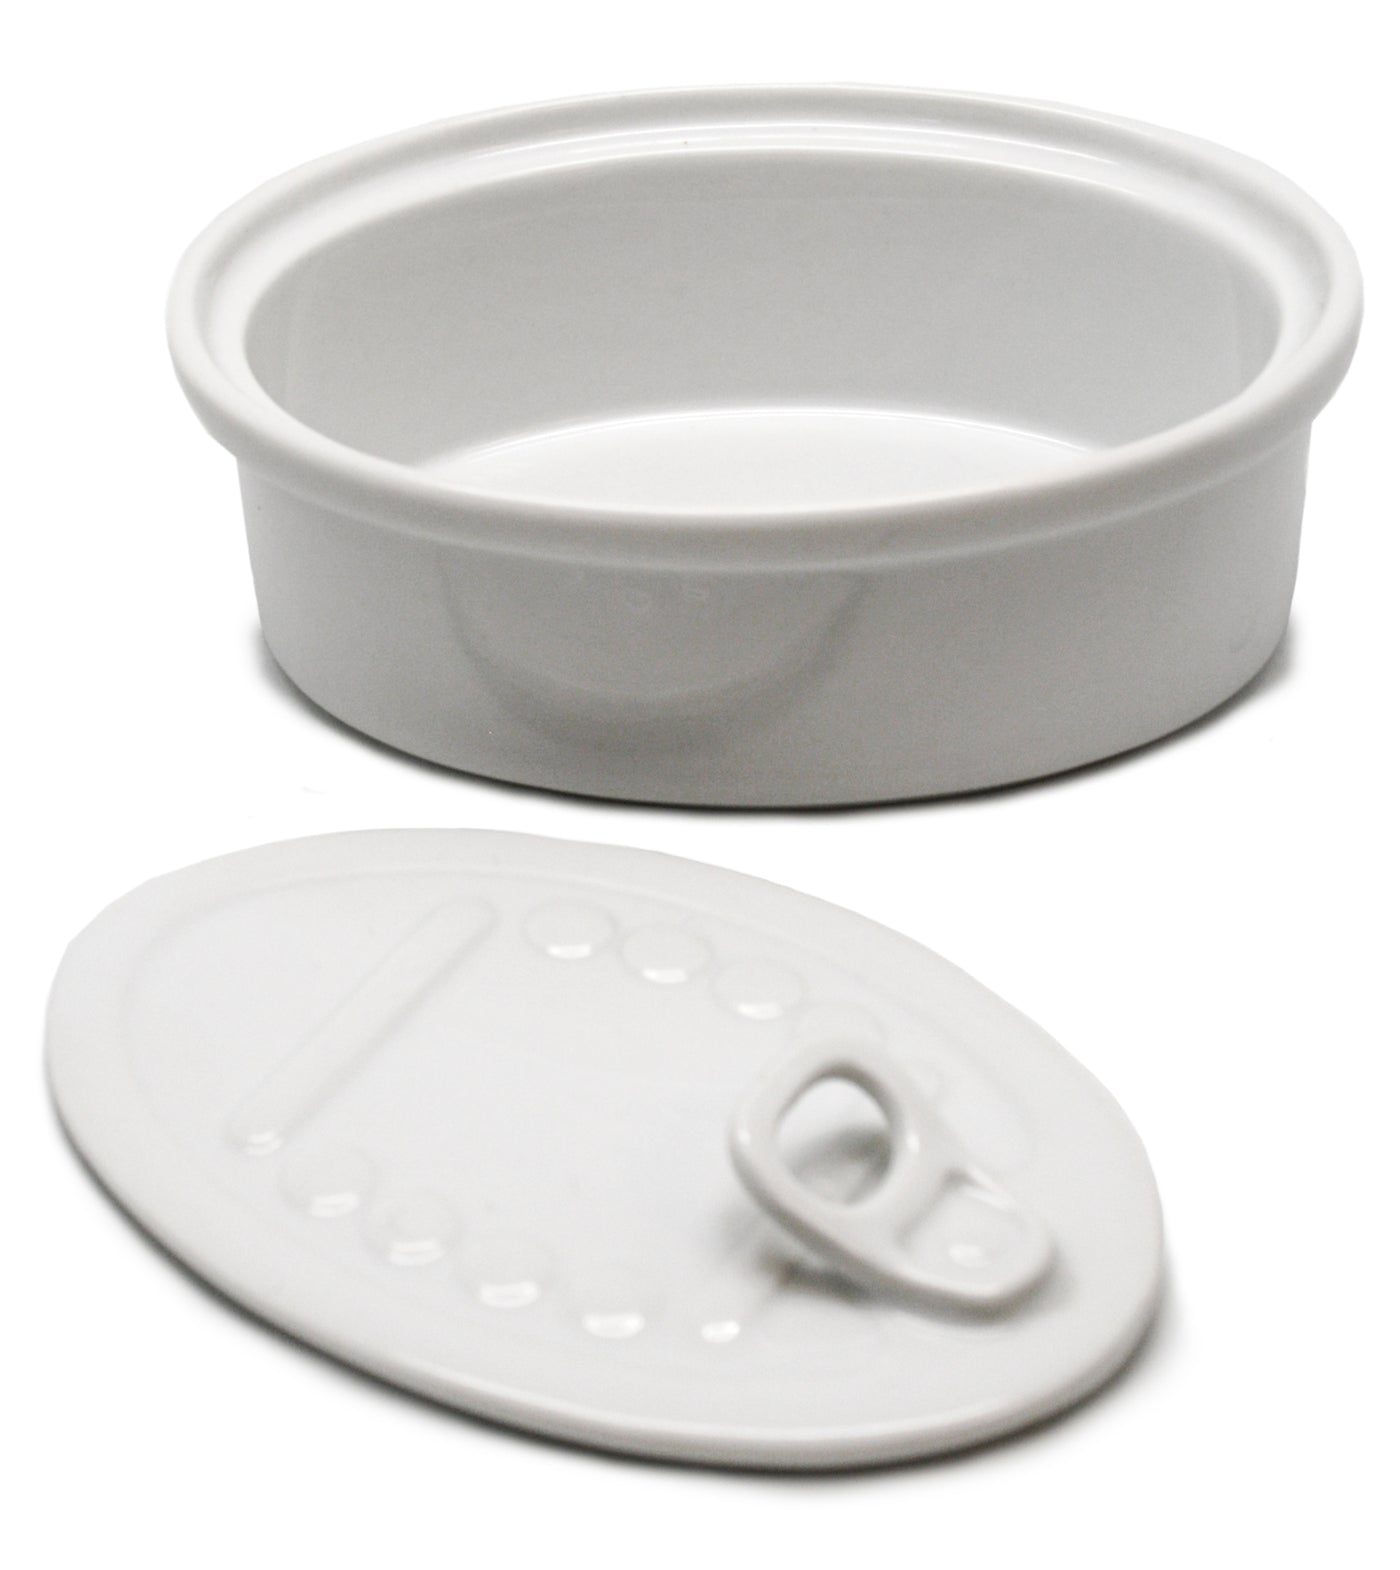 Bowl Ovalado Para Aperitivos Con Tapa De Porcelana